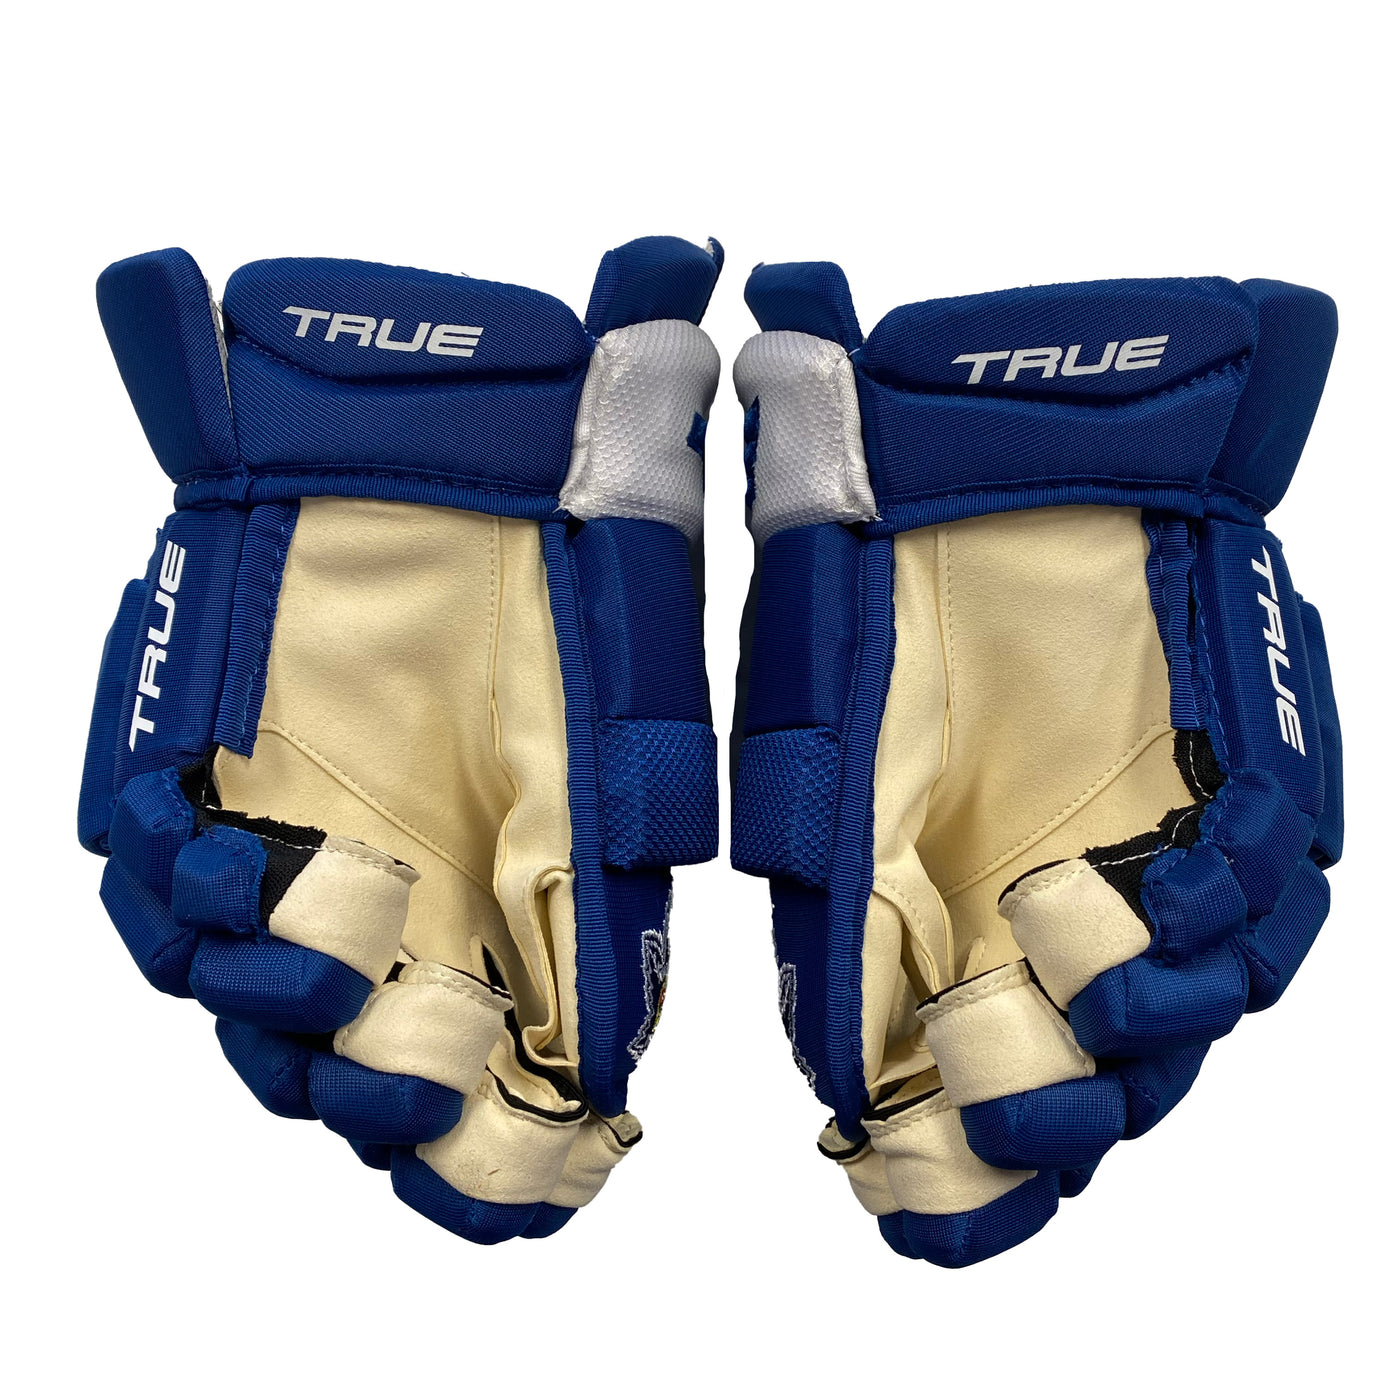 True Catalyst Team Custom Markham Hockey Gloves